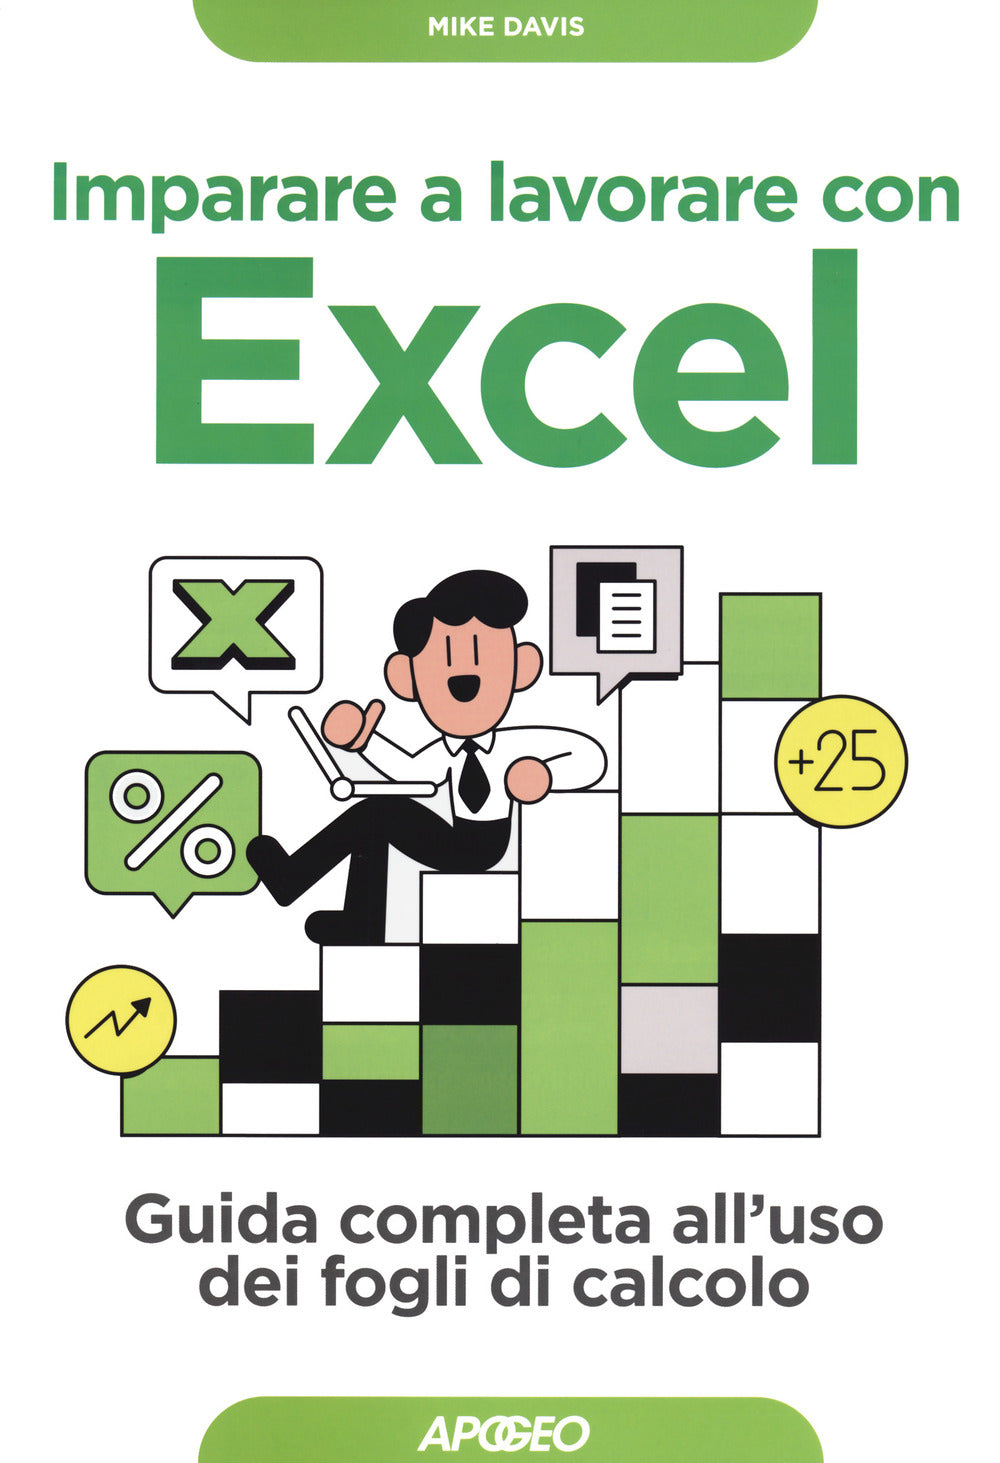 Imparare a lavorare con Excel. Guida completa all'uso dei fogli di calcolo.